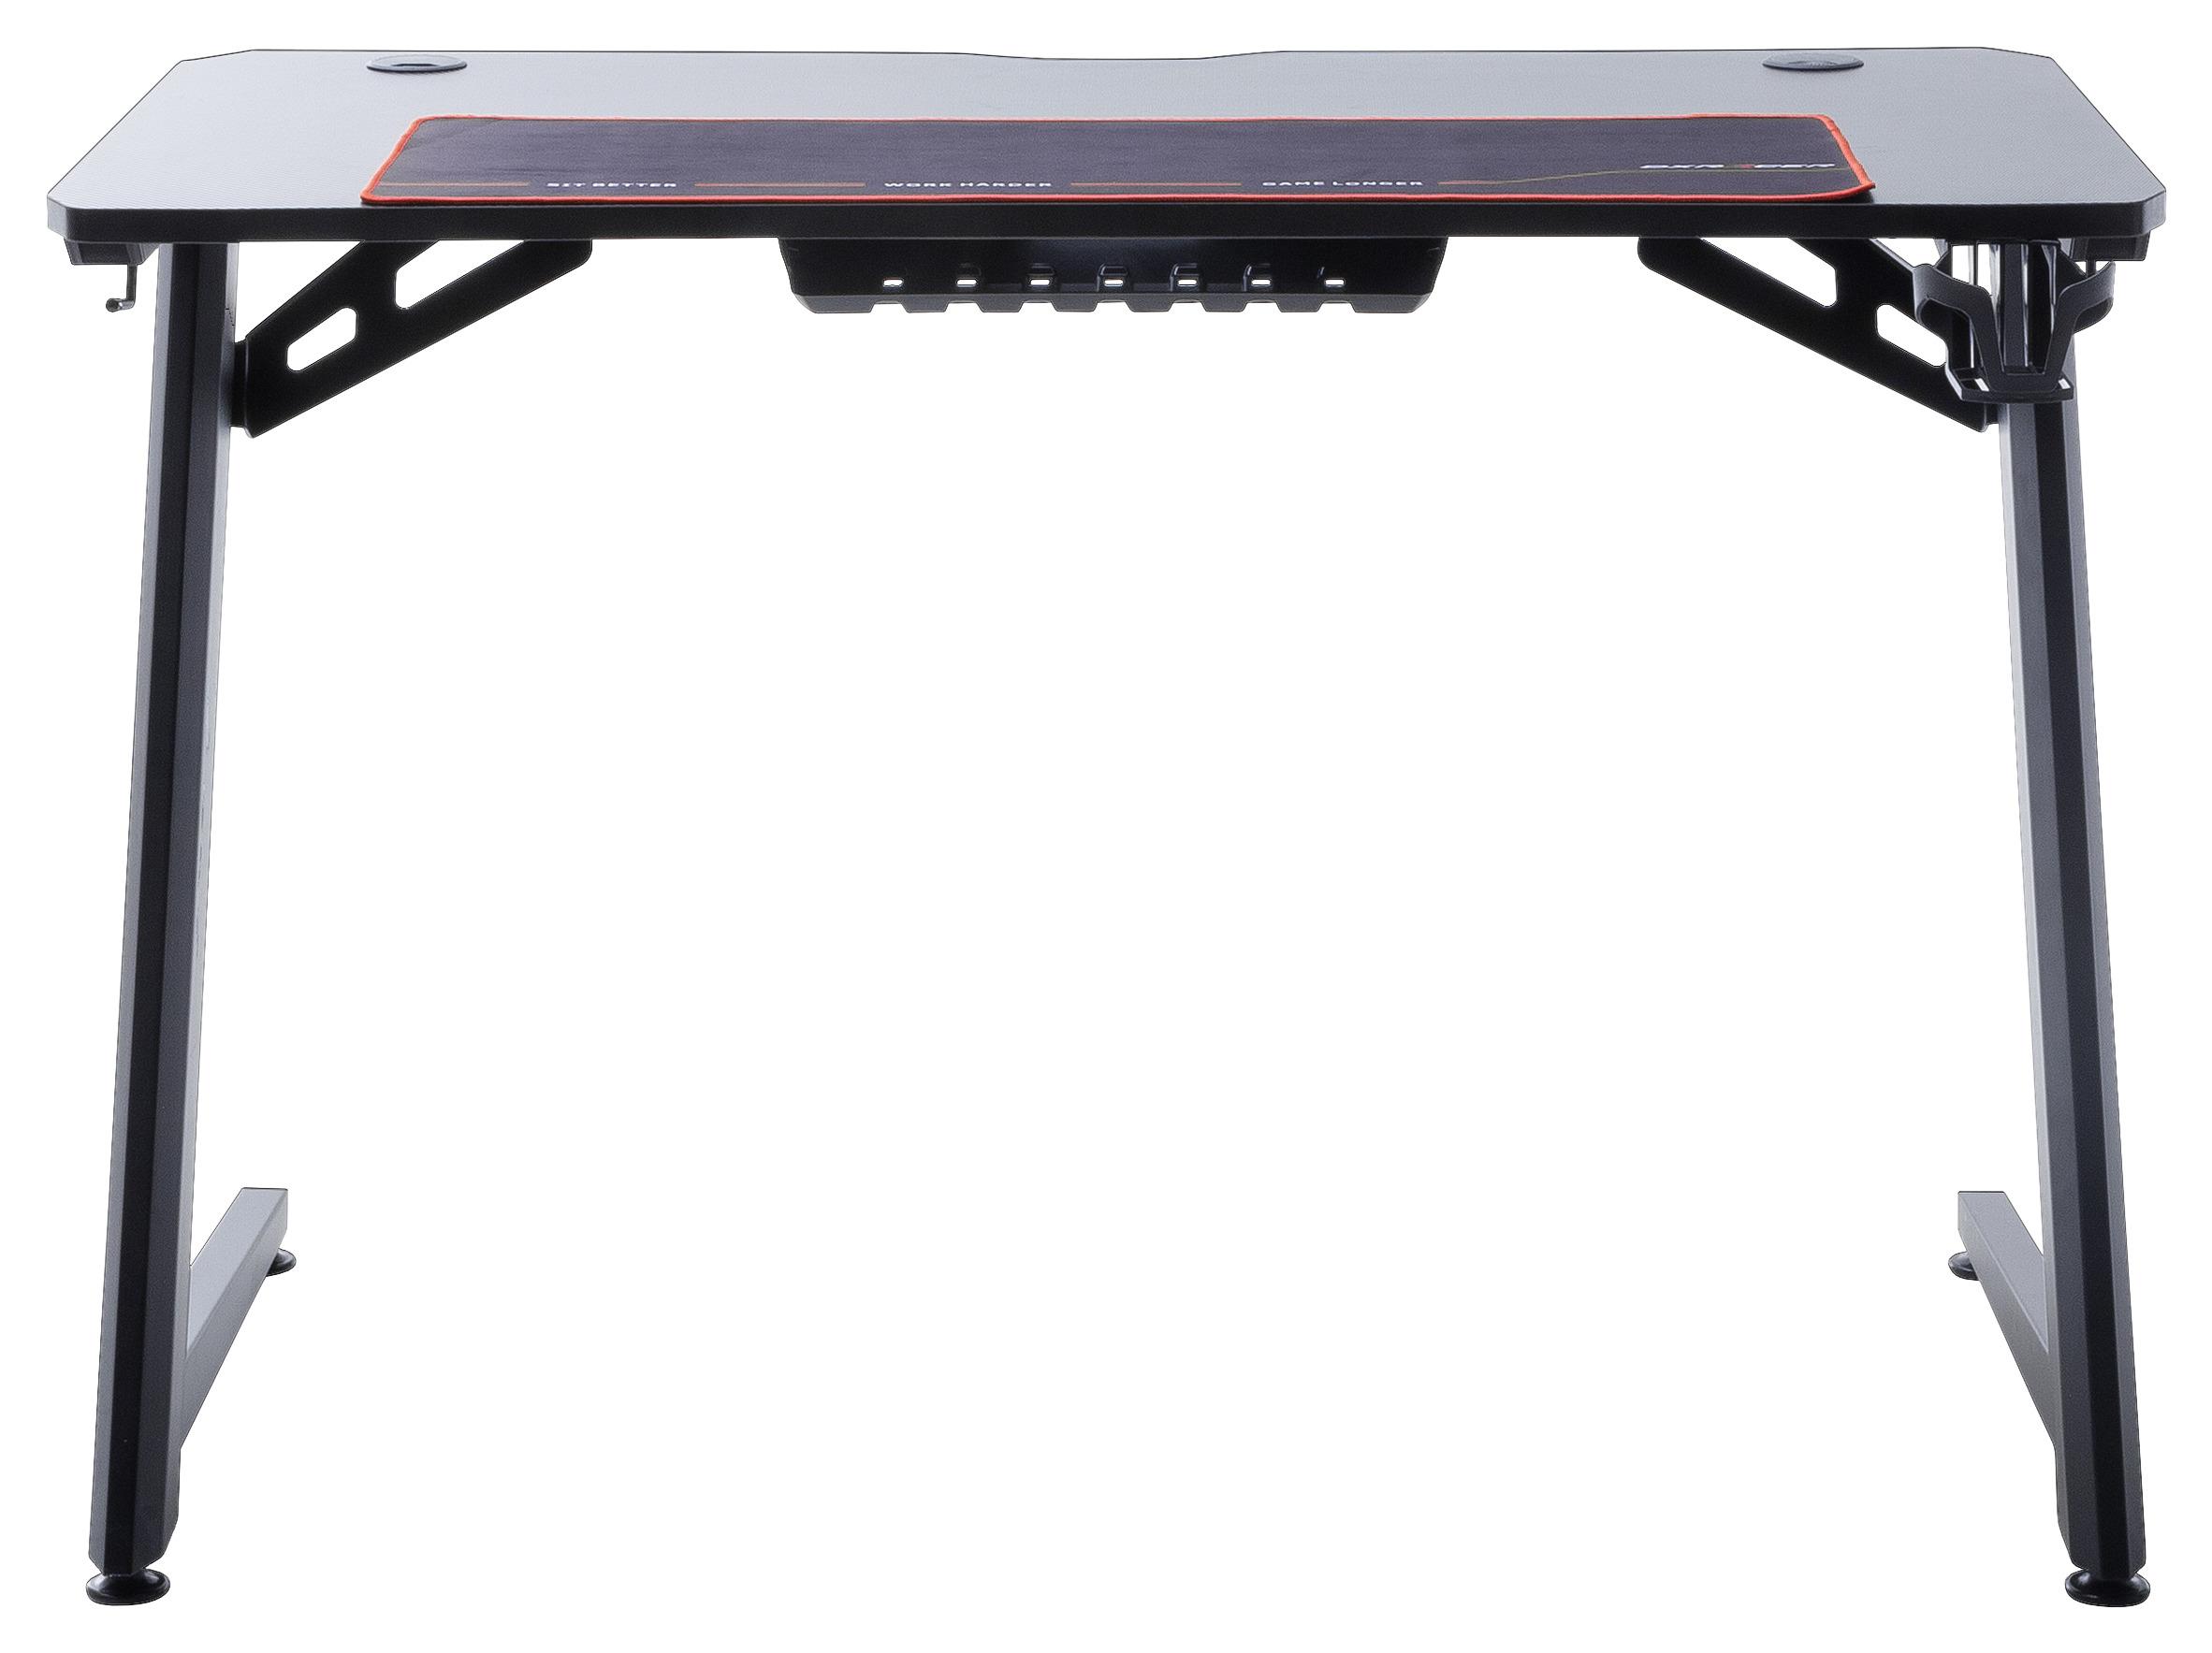 Gaming Tisch + Getränkehalter B 111cm H 75cm DX Racer 5 - Schwarz, Design, Holzwerkstoff/Metall (111/75/60cm) - Dxracer